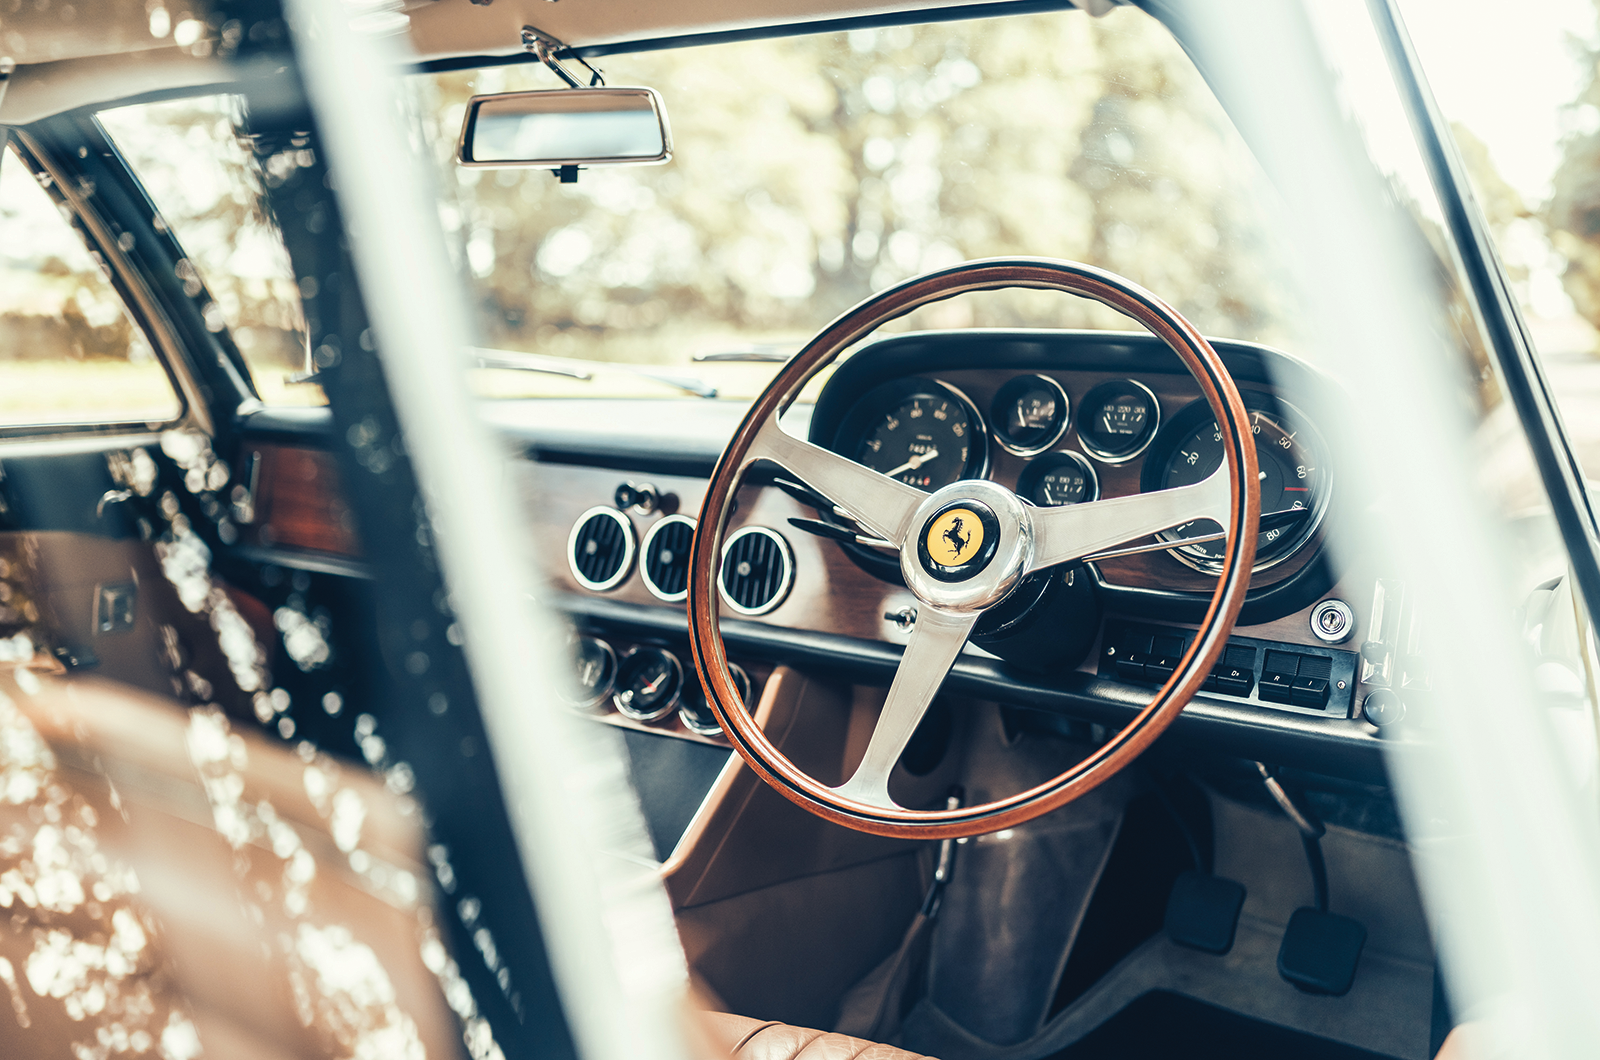 Classic & Sports Car – Ferrari 500 Superfast: the last temptation